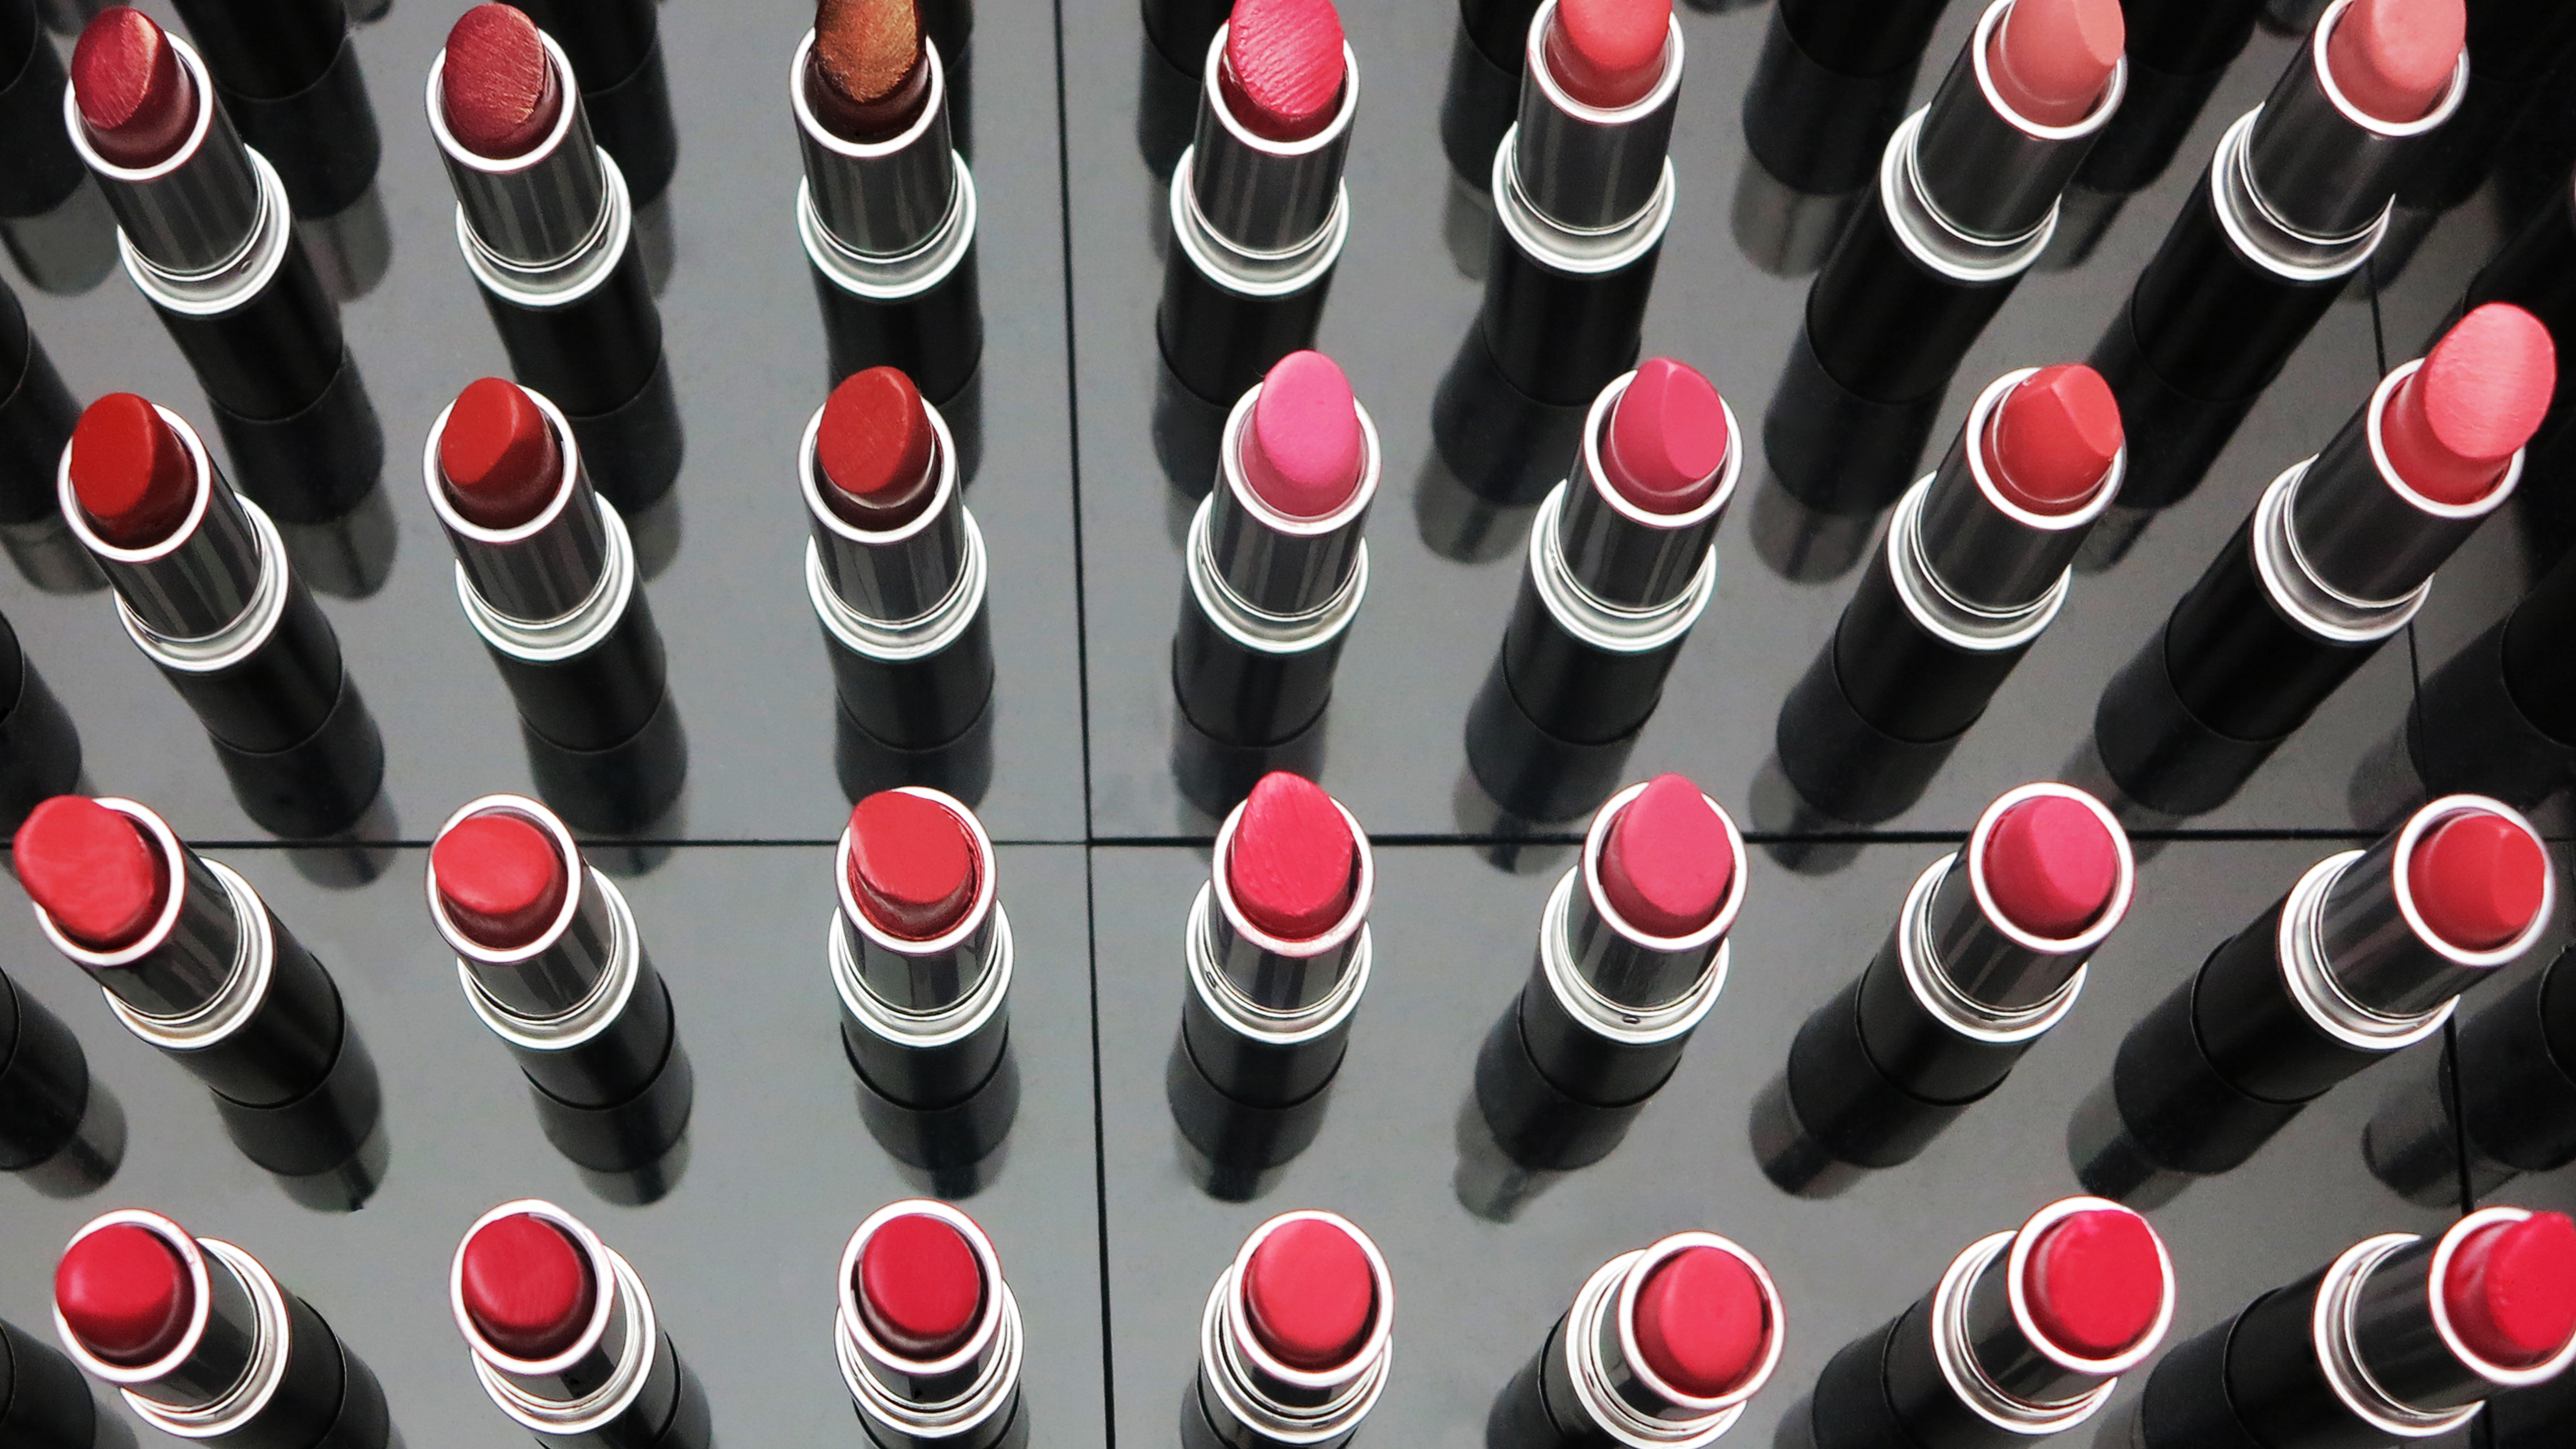 mac lipstick shades all